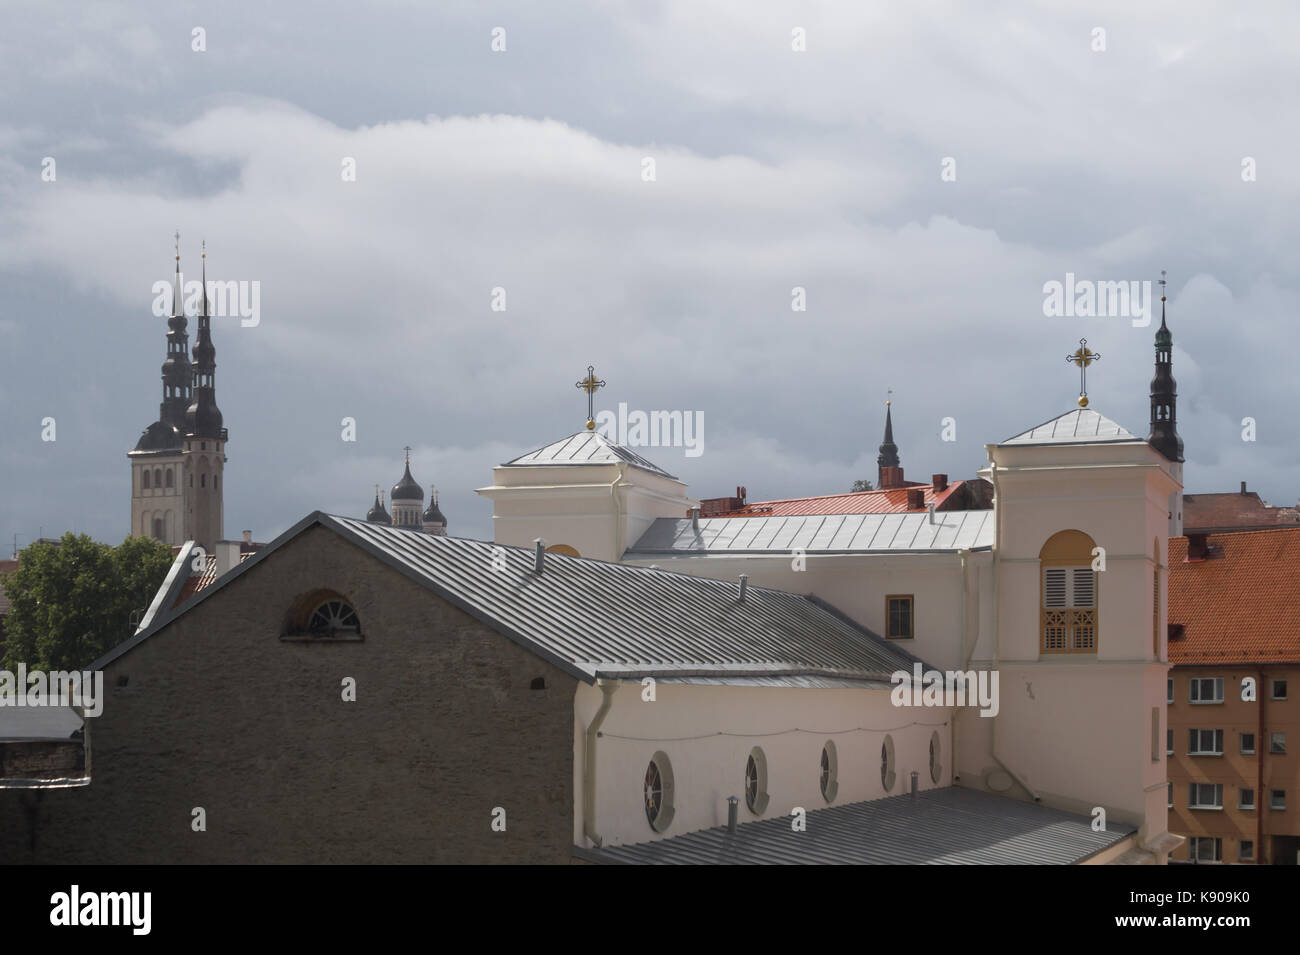 Cityscape in old town Tallinn Estonia Stock Photo